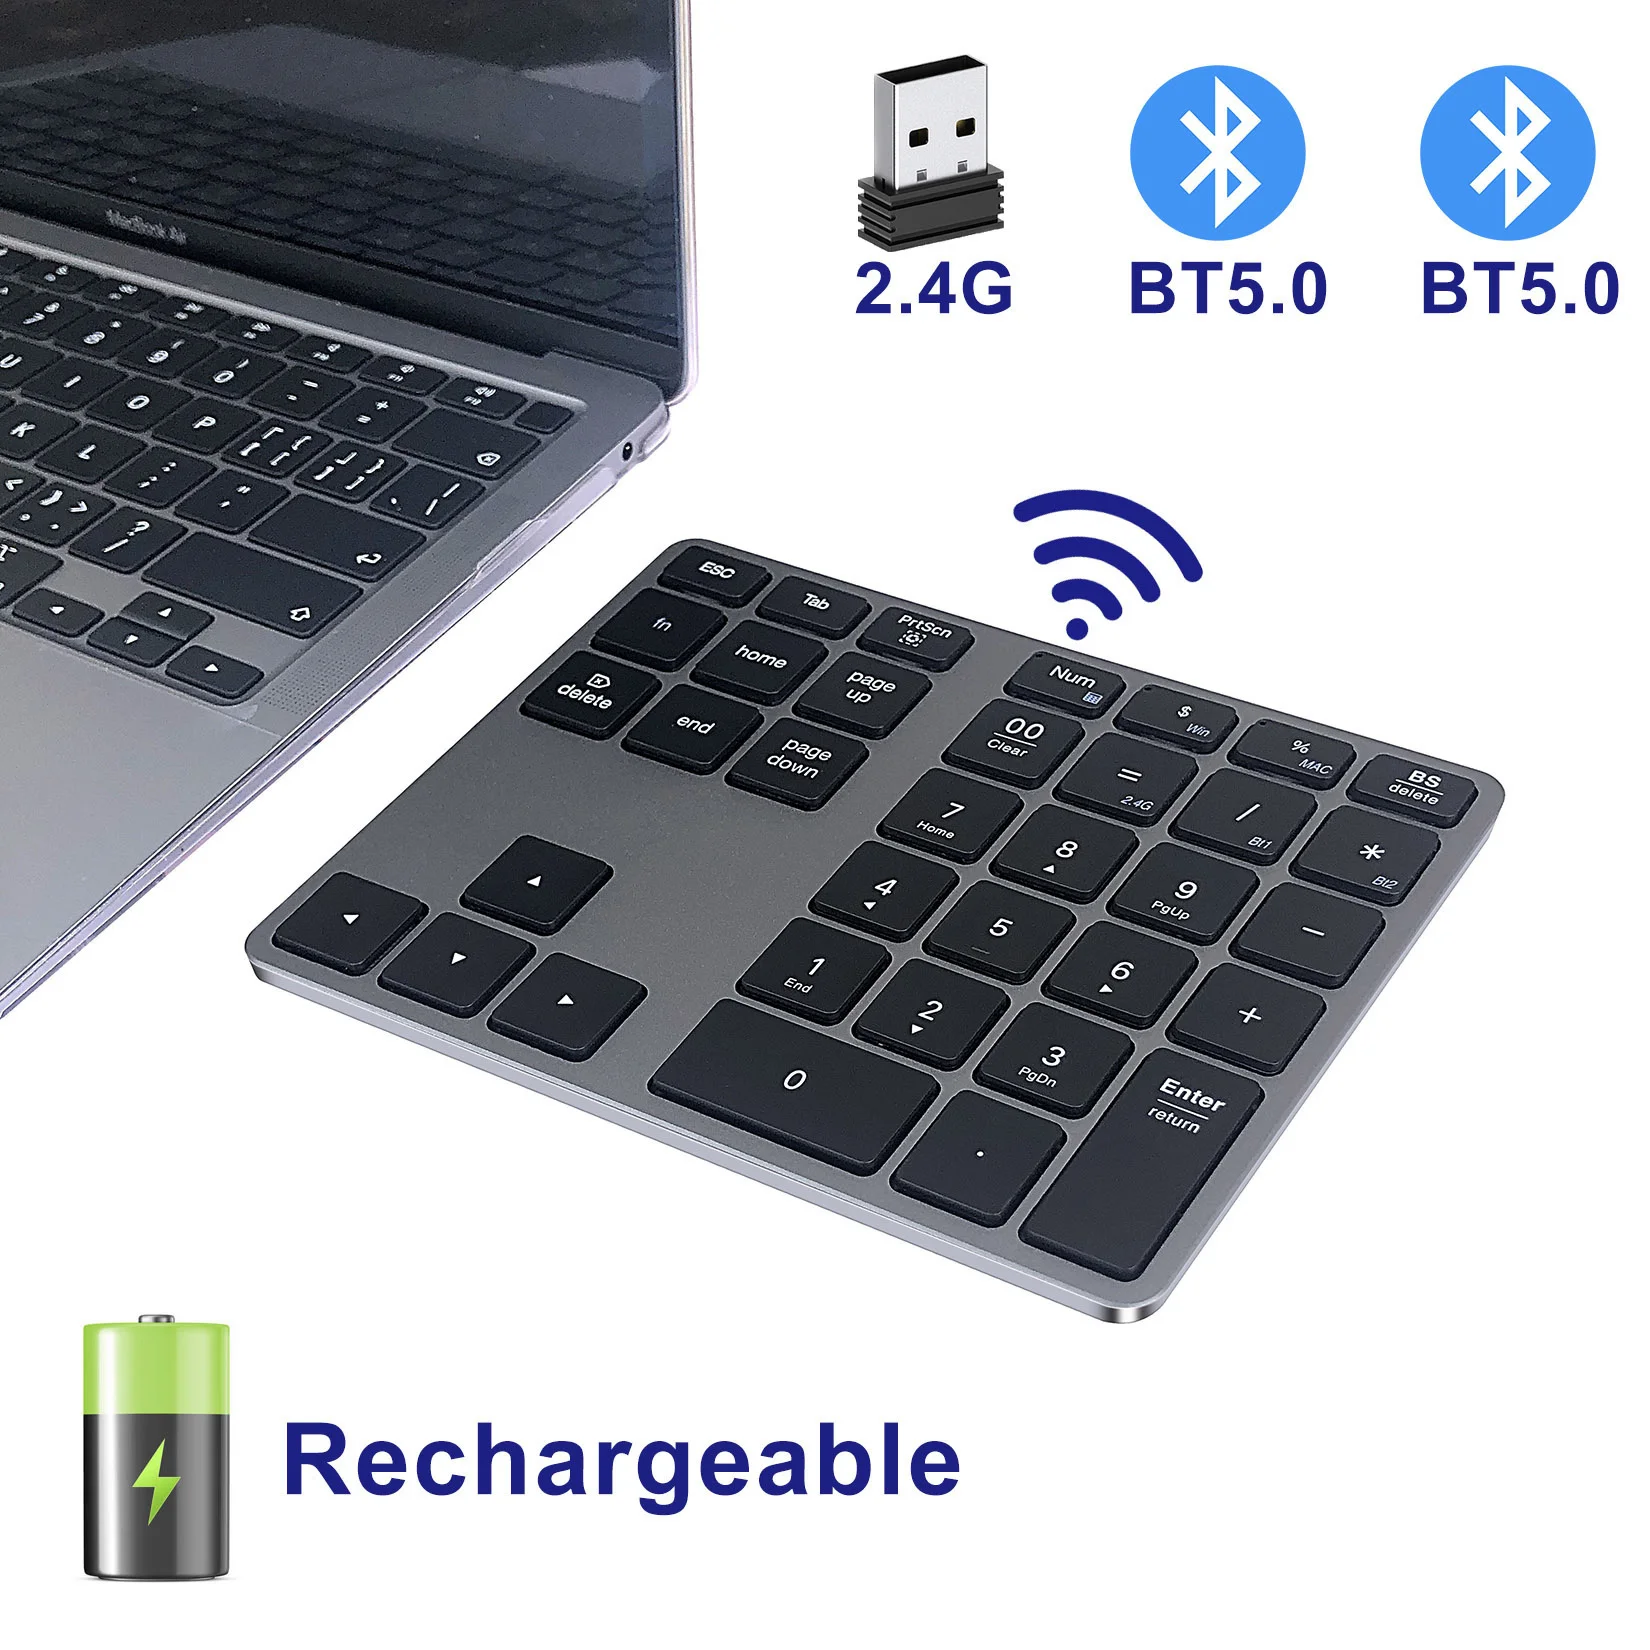 

Bluetooth цифровая клавиатура алюминиевая перезаряжаемая беспроводная цифровая панель Тонкий 35 клавиш USB + BT5.0 цифровая клавиатура для Mac,Macbook, н...